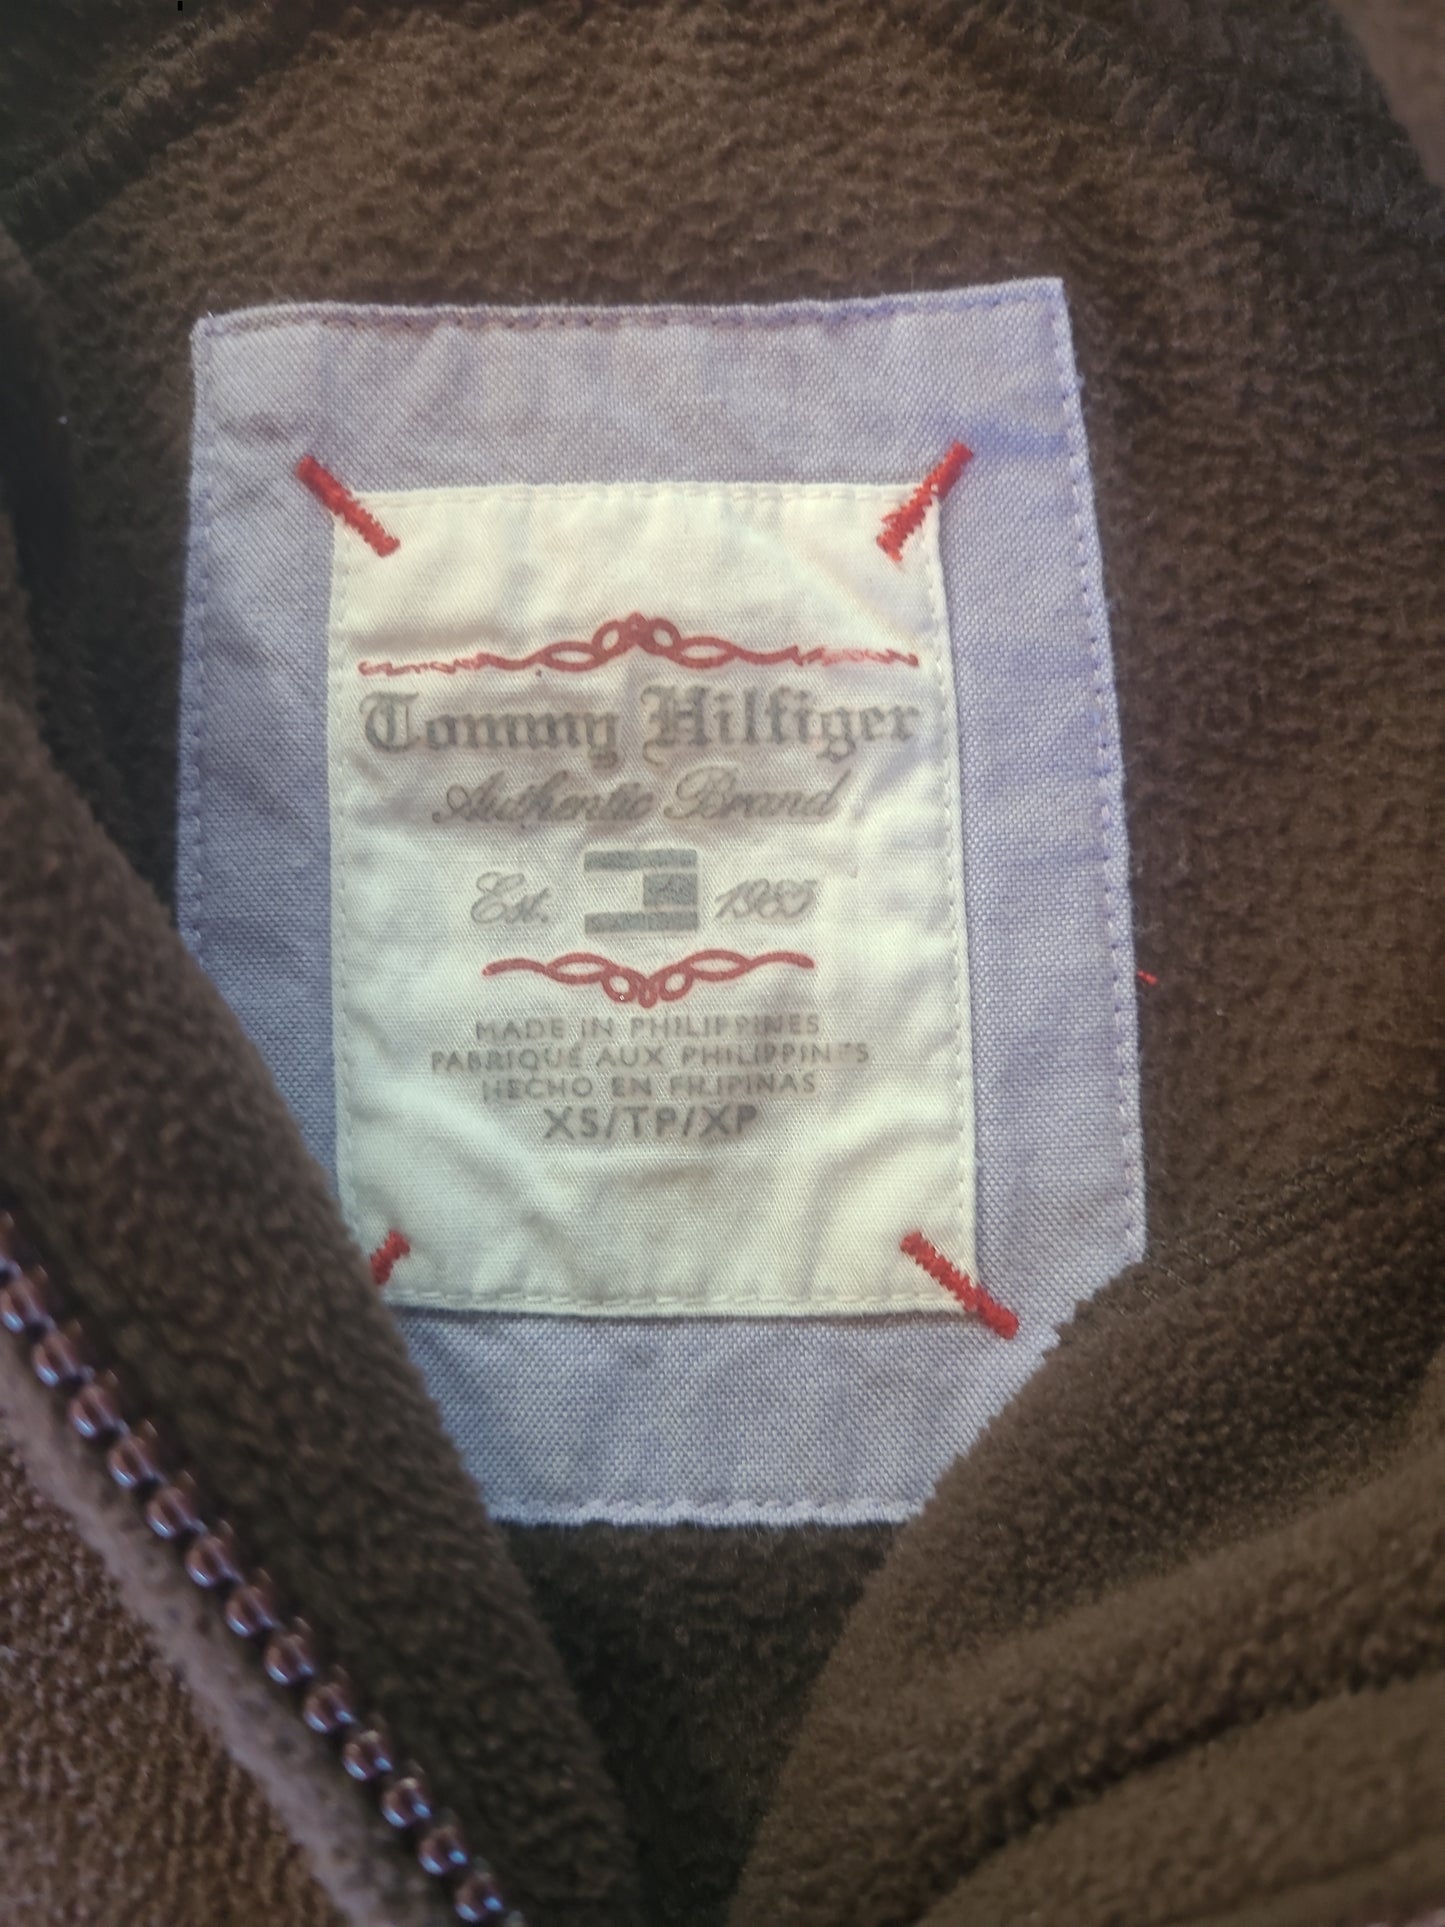 Vintage Tommy Hilfiger Zip Up Fleece Jacket Brown - XS